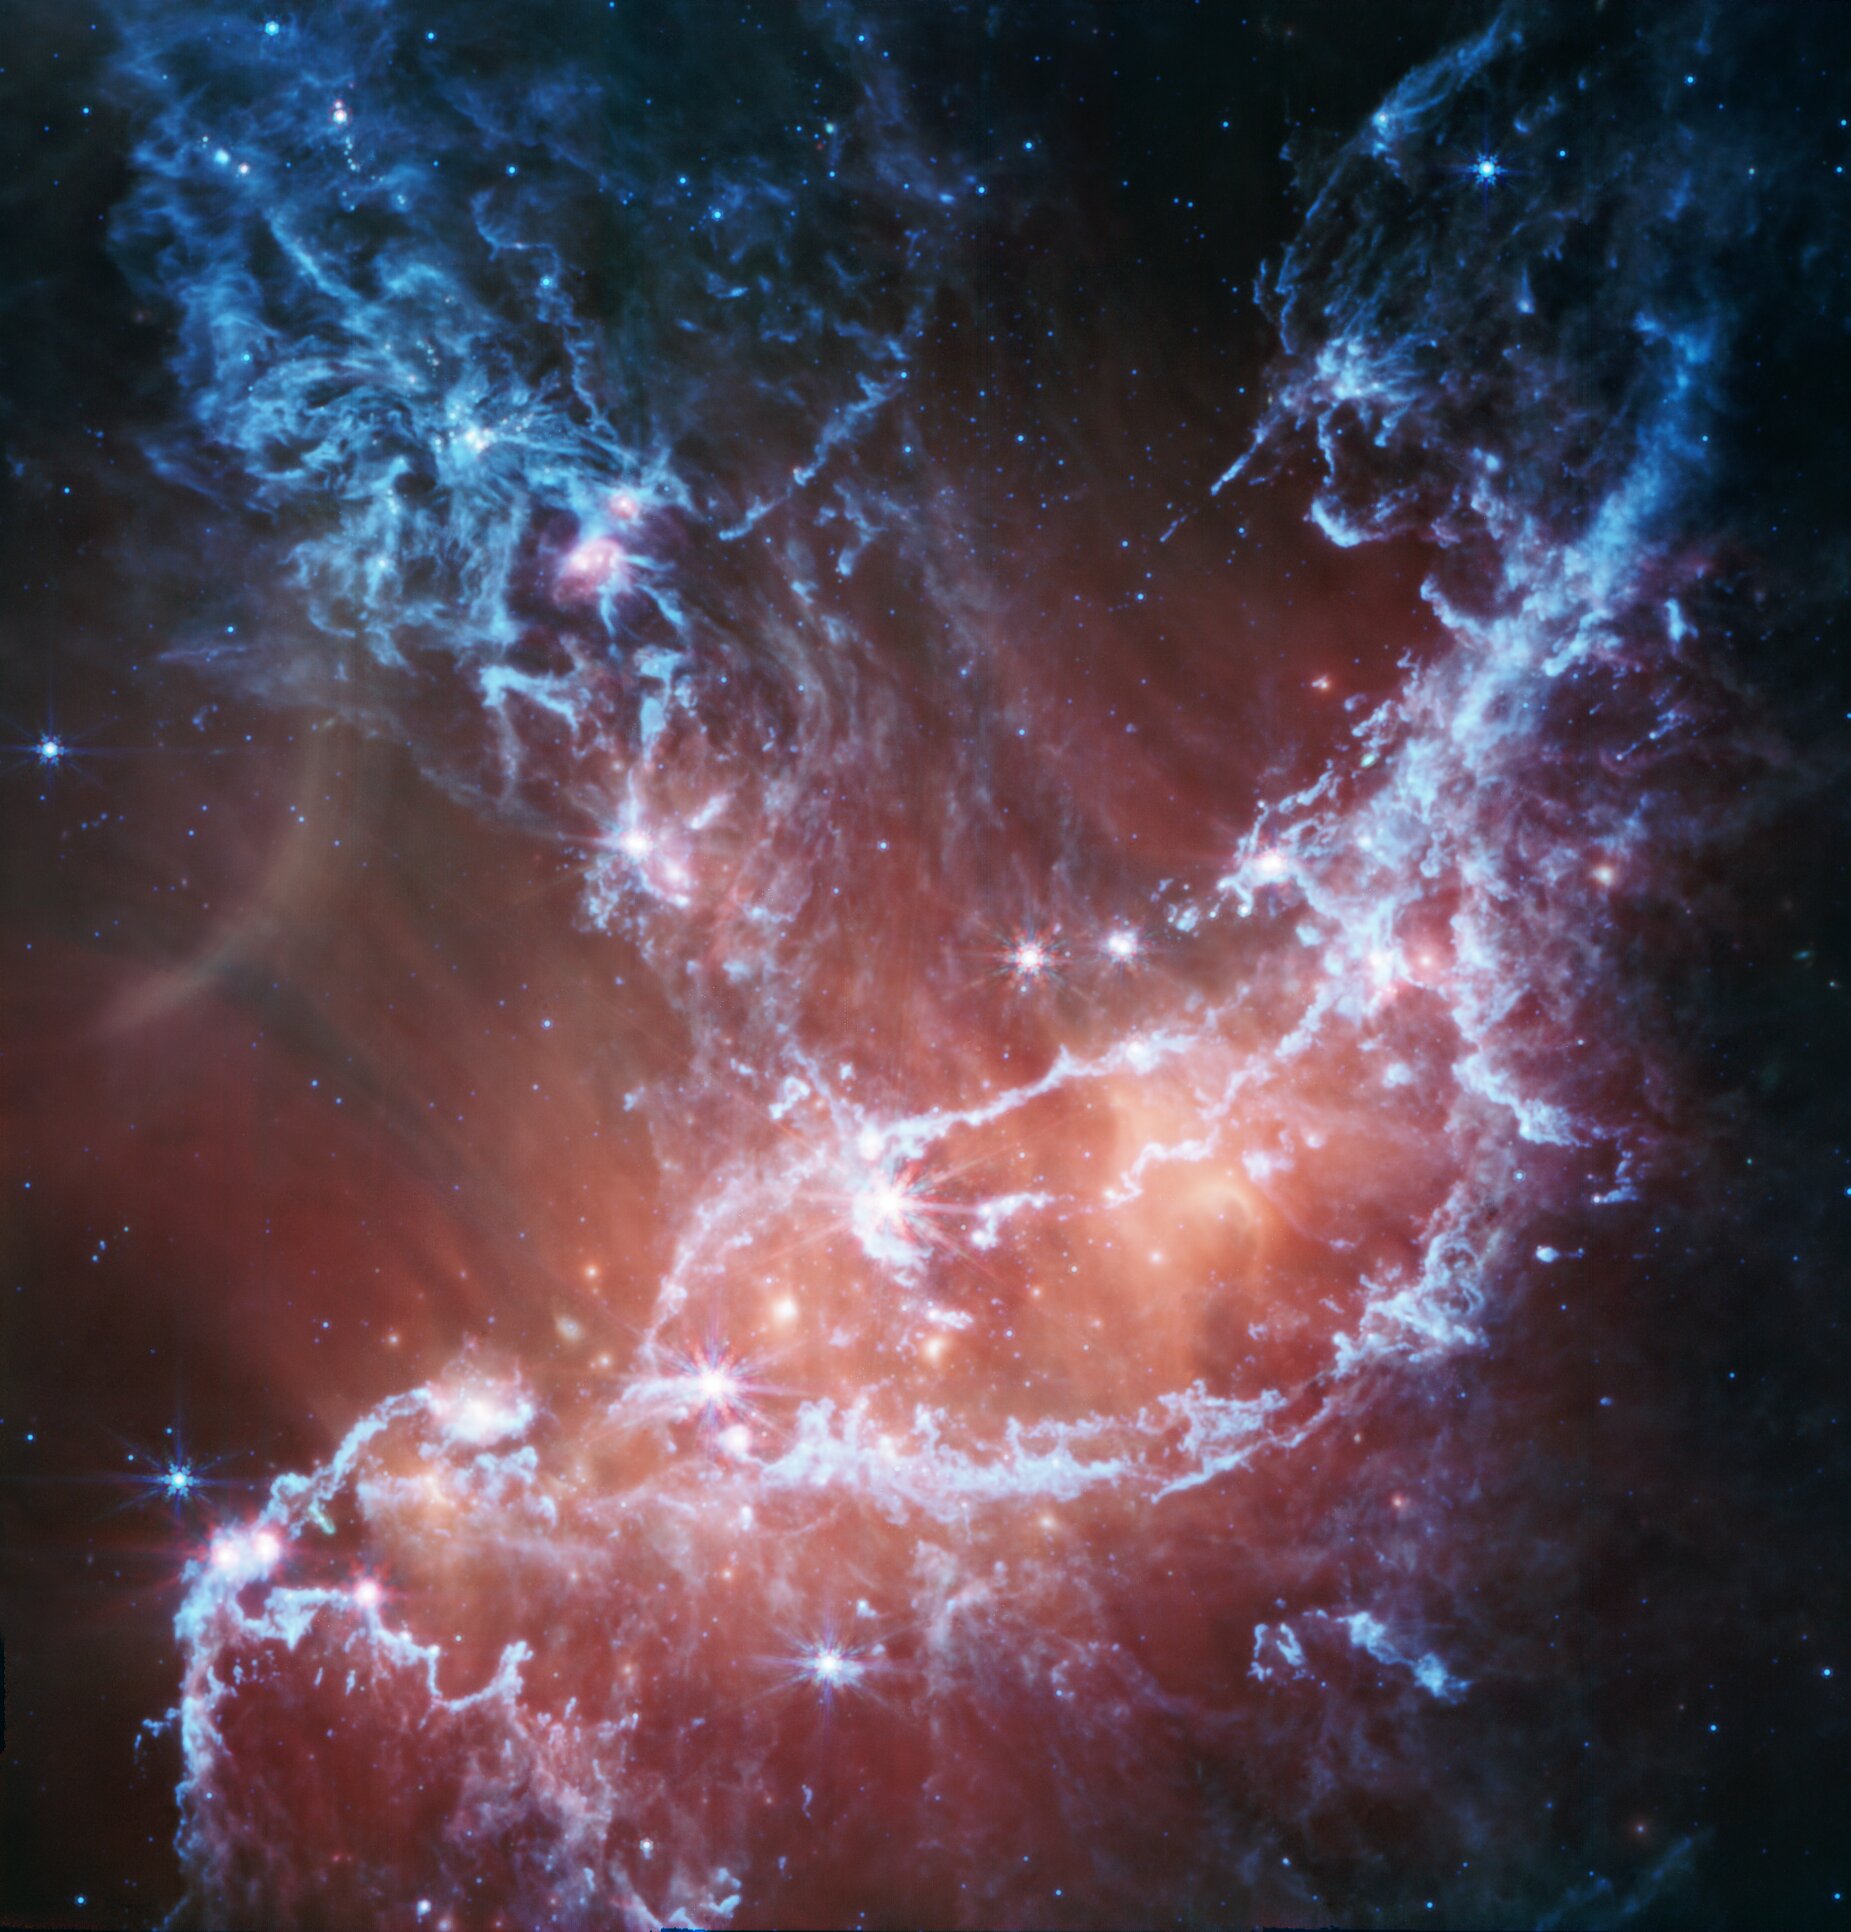 Najnovija infracrvena slika NGC 346 iz NASA-inog teleskopa James Webb i njegovog srednje-infracrvenog instrumenta (MIRI) ističe emisije hladnog plina i prašine. Na ovoj slici, plava boja označava silikate i specifične čađave molekule zvane policiklički aromatski ugljikovodici, ili PAHs. Širi crveni sjaj dolazi od prašine koja se zagrijava zbog najsjajnijih, masivnih zvijezda u središtu regije. Slika koristi spektar koji seže od 7,7-mikronskog svjetla (prikazanog u plavoj boji) do 21 mikrona u crvenoj. Zasluge za sliku idu NASA-i, ESA-i, CSA-i, STScI, Nolanu Habelu (NASA-JPL), a obradu slike obavio je Patrick Kavanagh (Sveučilište u Maynoothu).